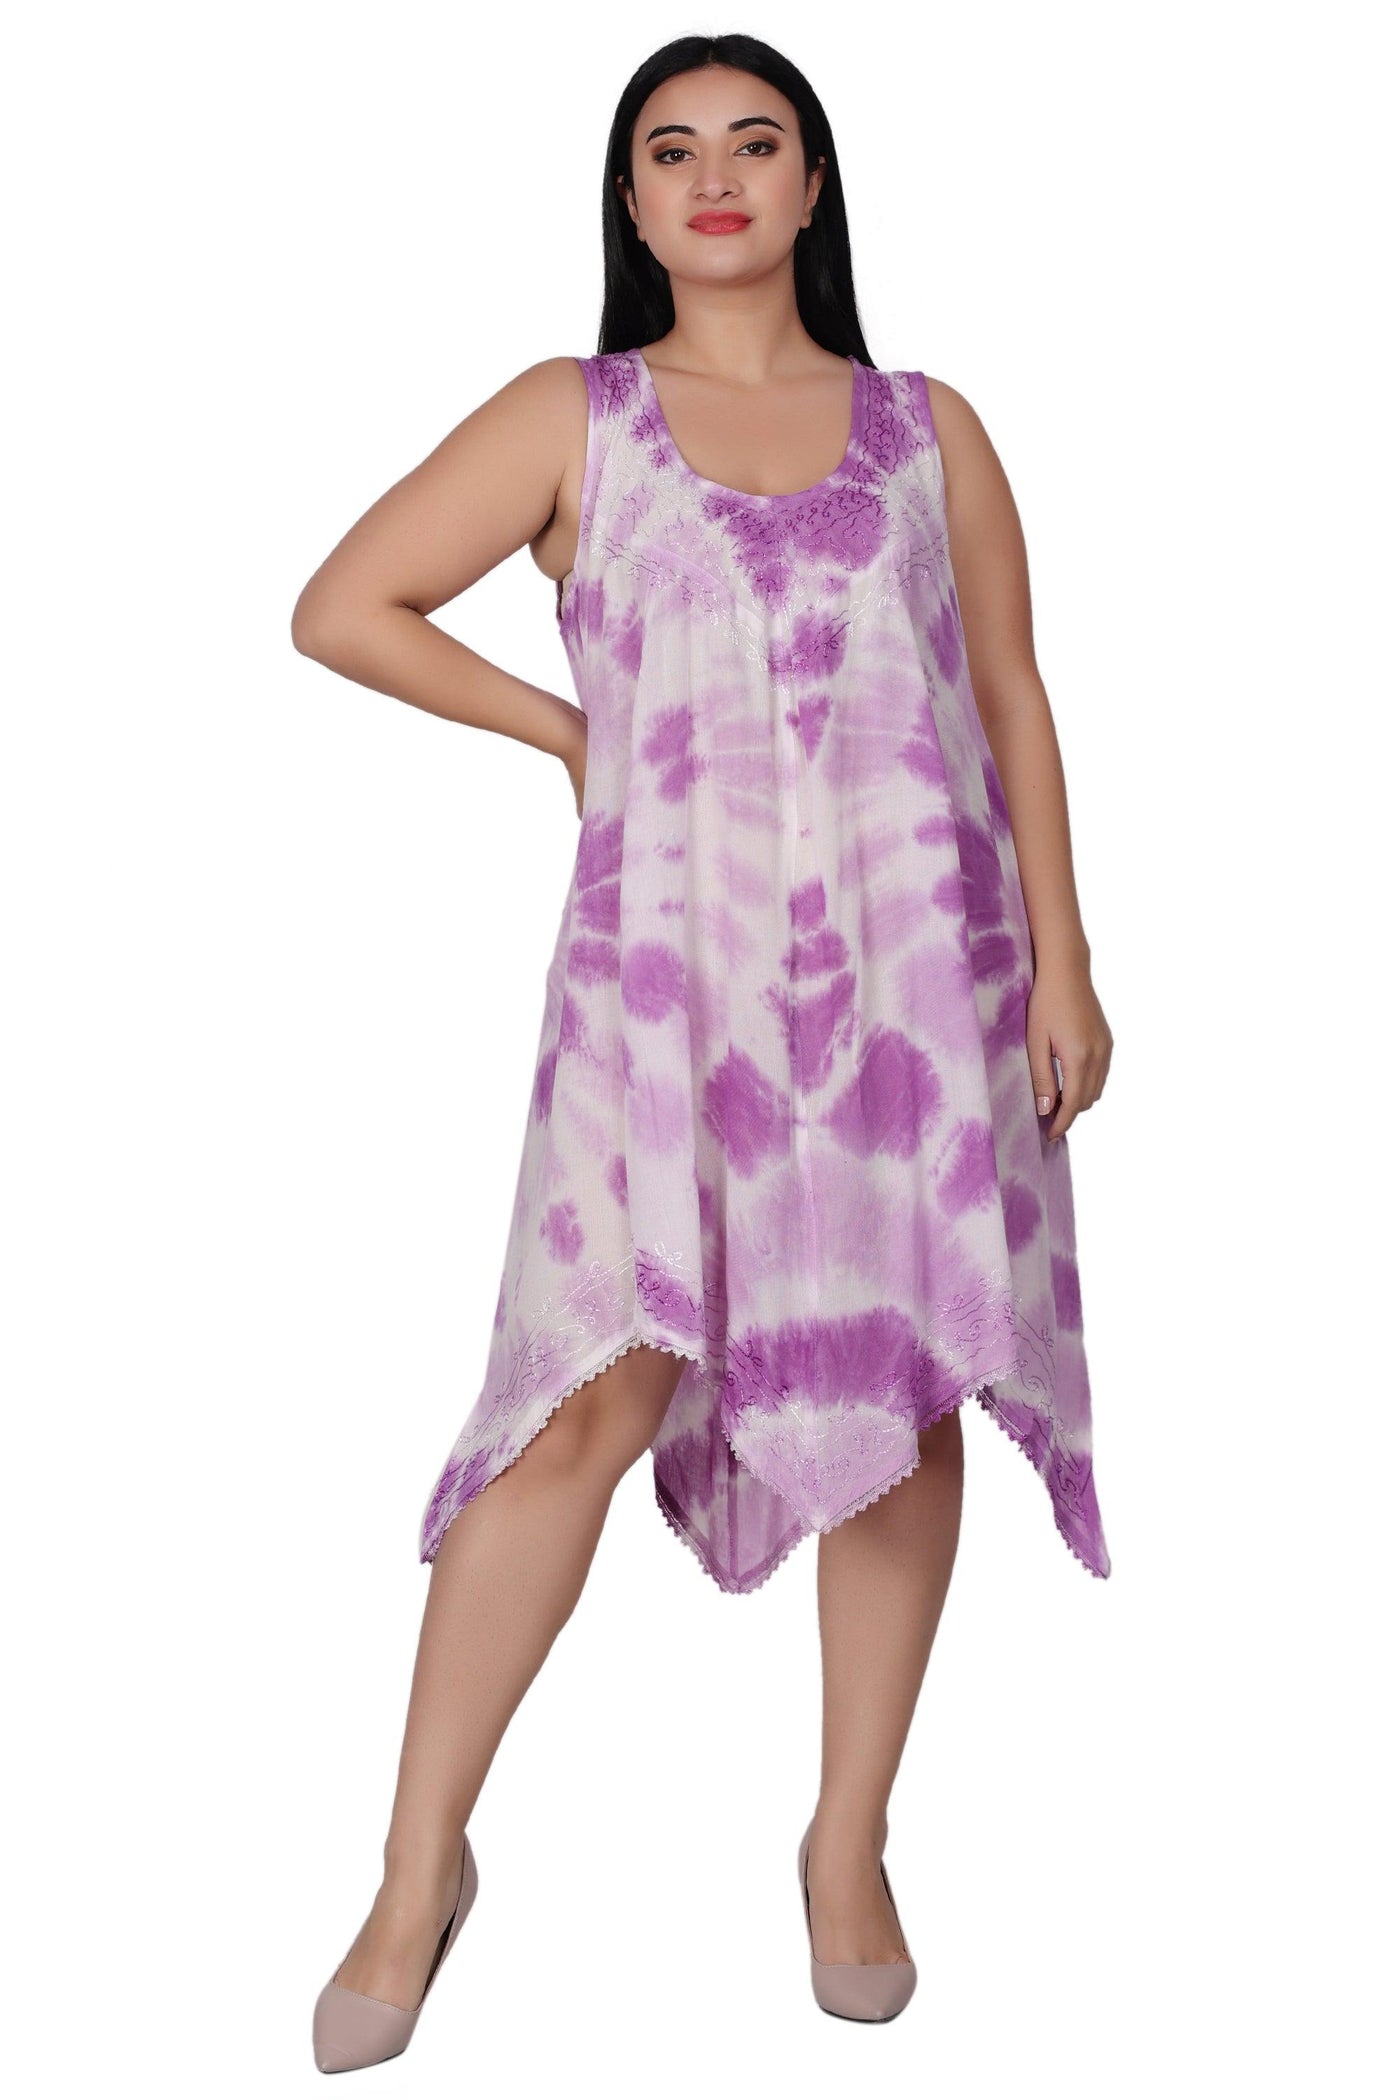 Fairytale Bottom Tie Dye Dress 422141FT  - Advance Apparels Inc